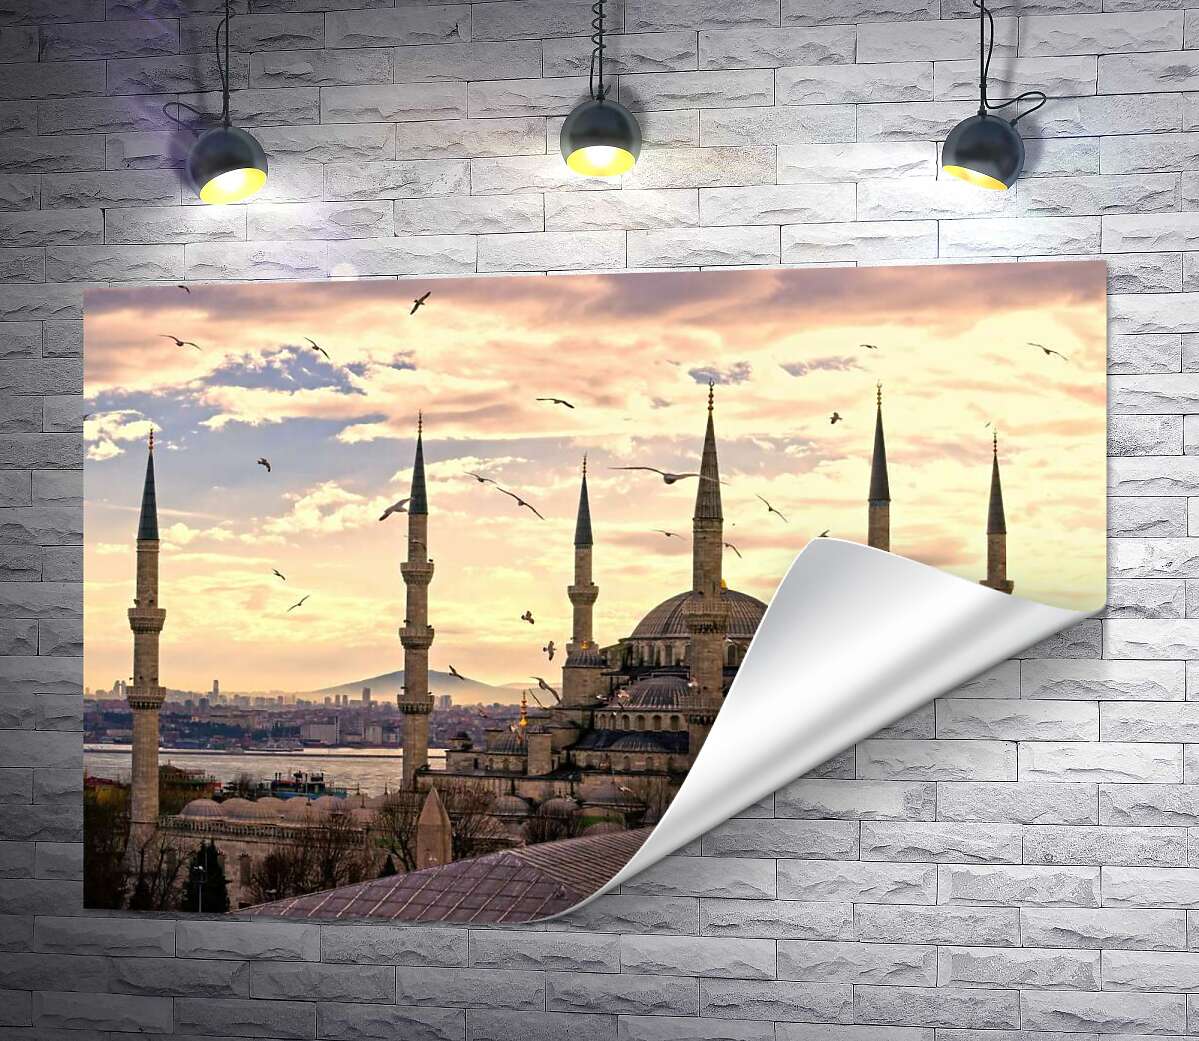 друк Гострі шпилі Блакитної мечеті (Sultanahmet Camii) линуть у небо Стамбула